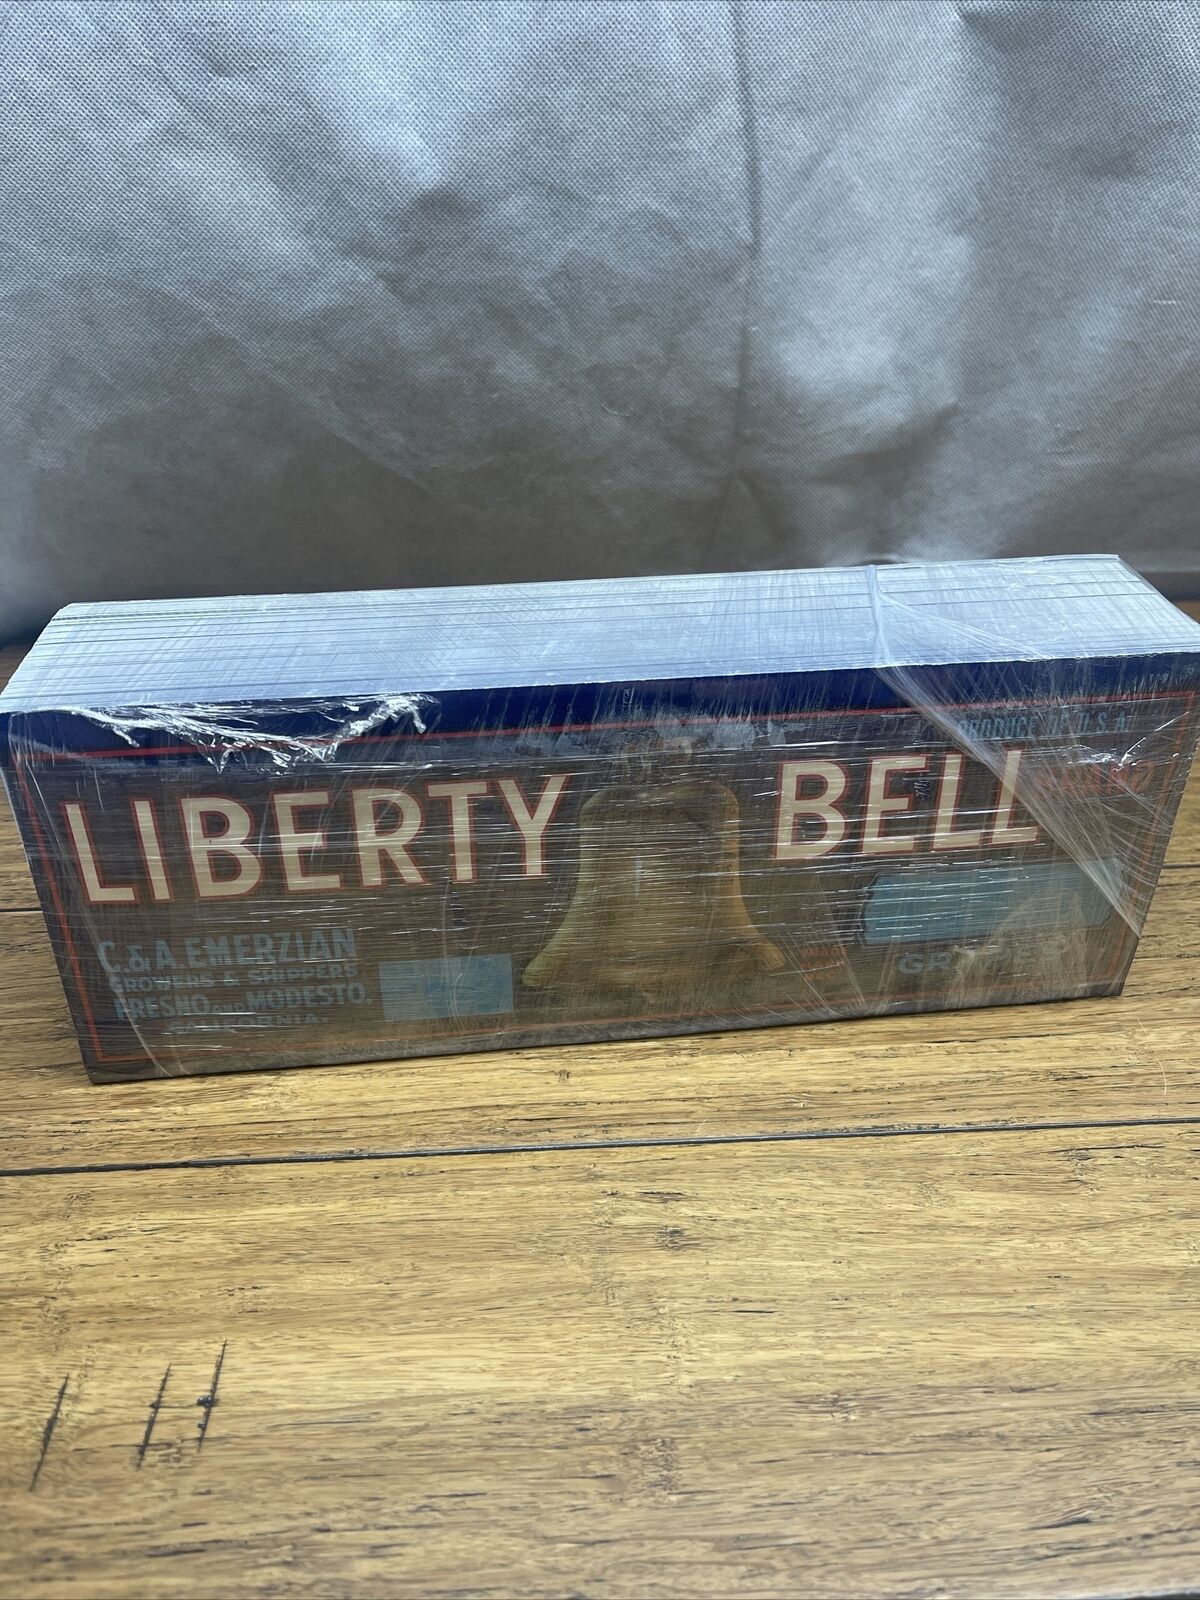 Antique Lot Of 1000 Original 1940's Liberty Bell Grapes Crate Labels 13”x5” JD